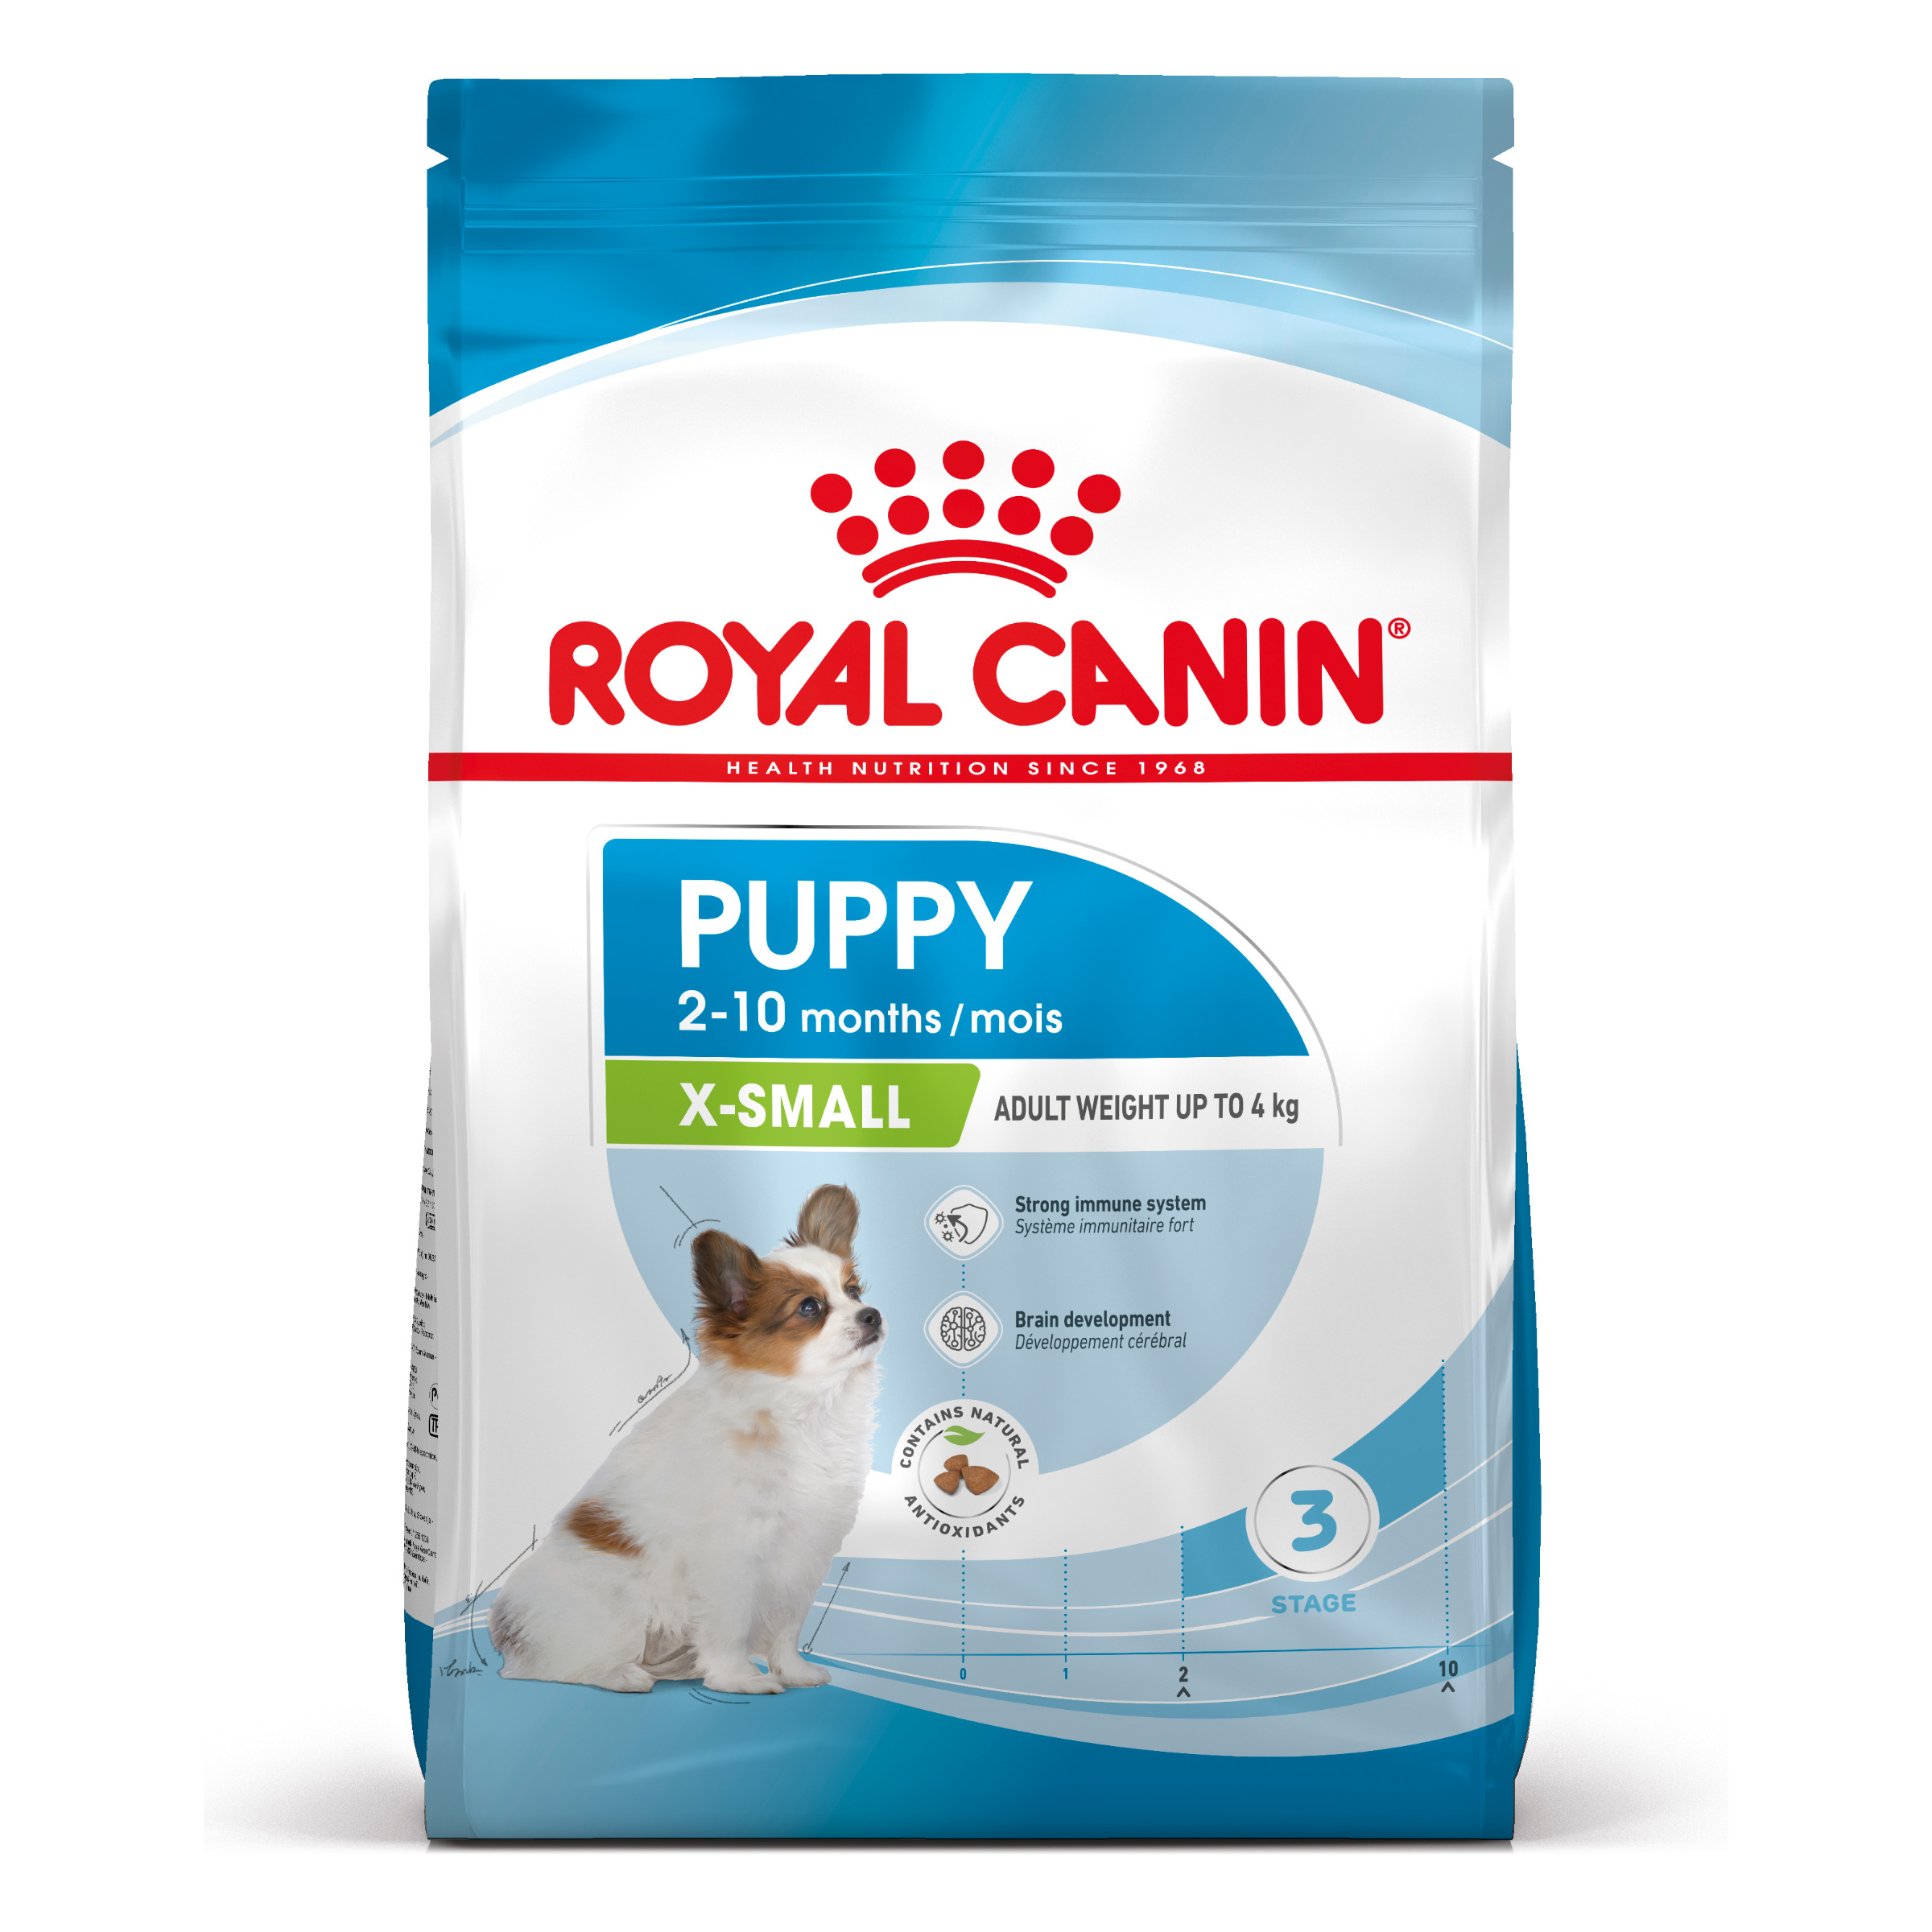 Royal Canin X-Small Puppy - Aliment pour chiots de toutes petites races (poids adulte jusqu'à 4 kg) - Jusqu'à 10 mois - 1,5kg